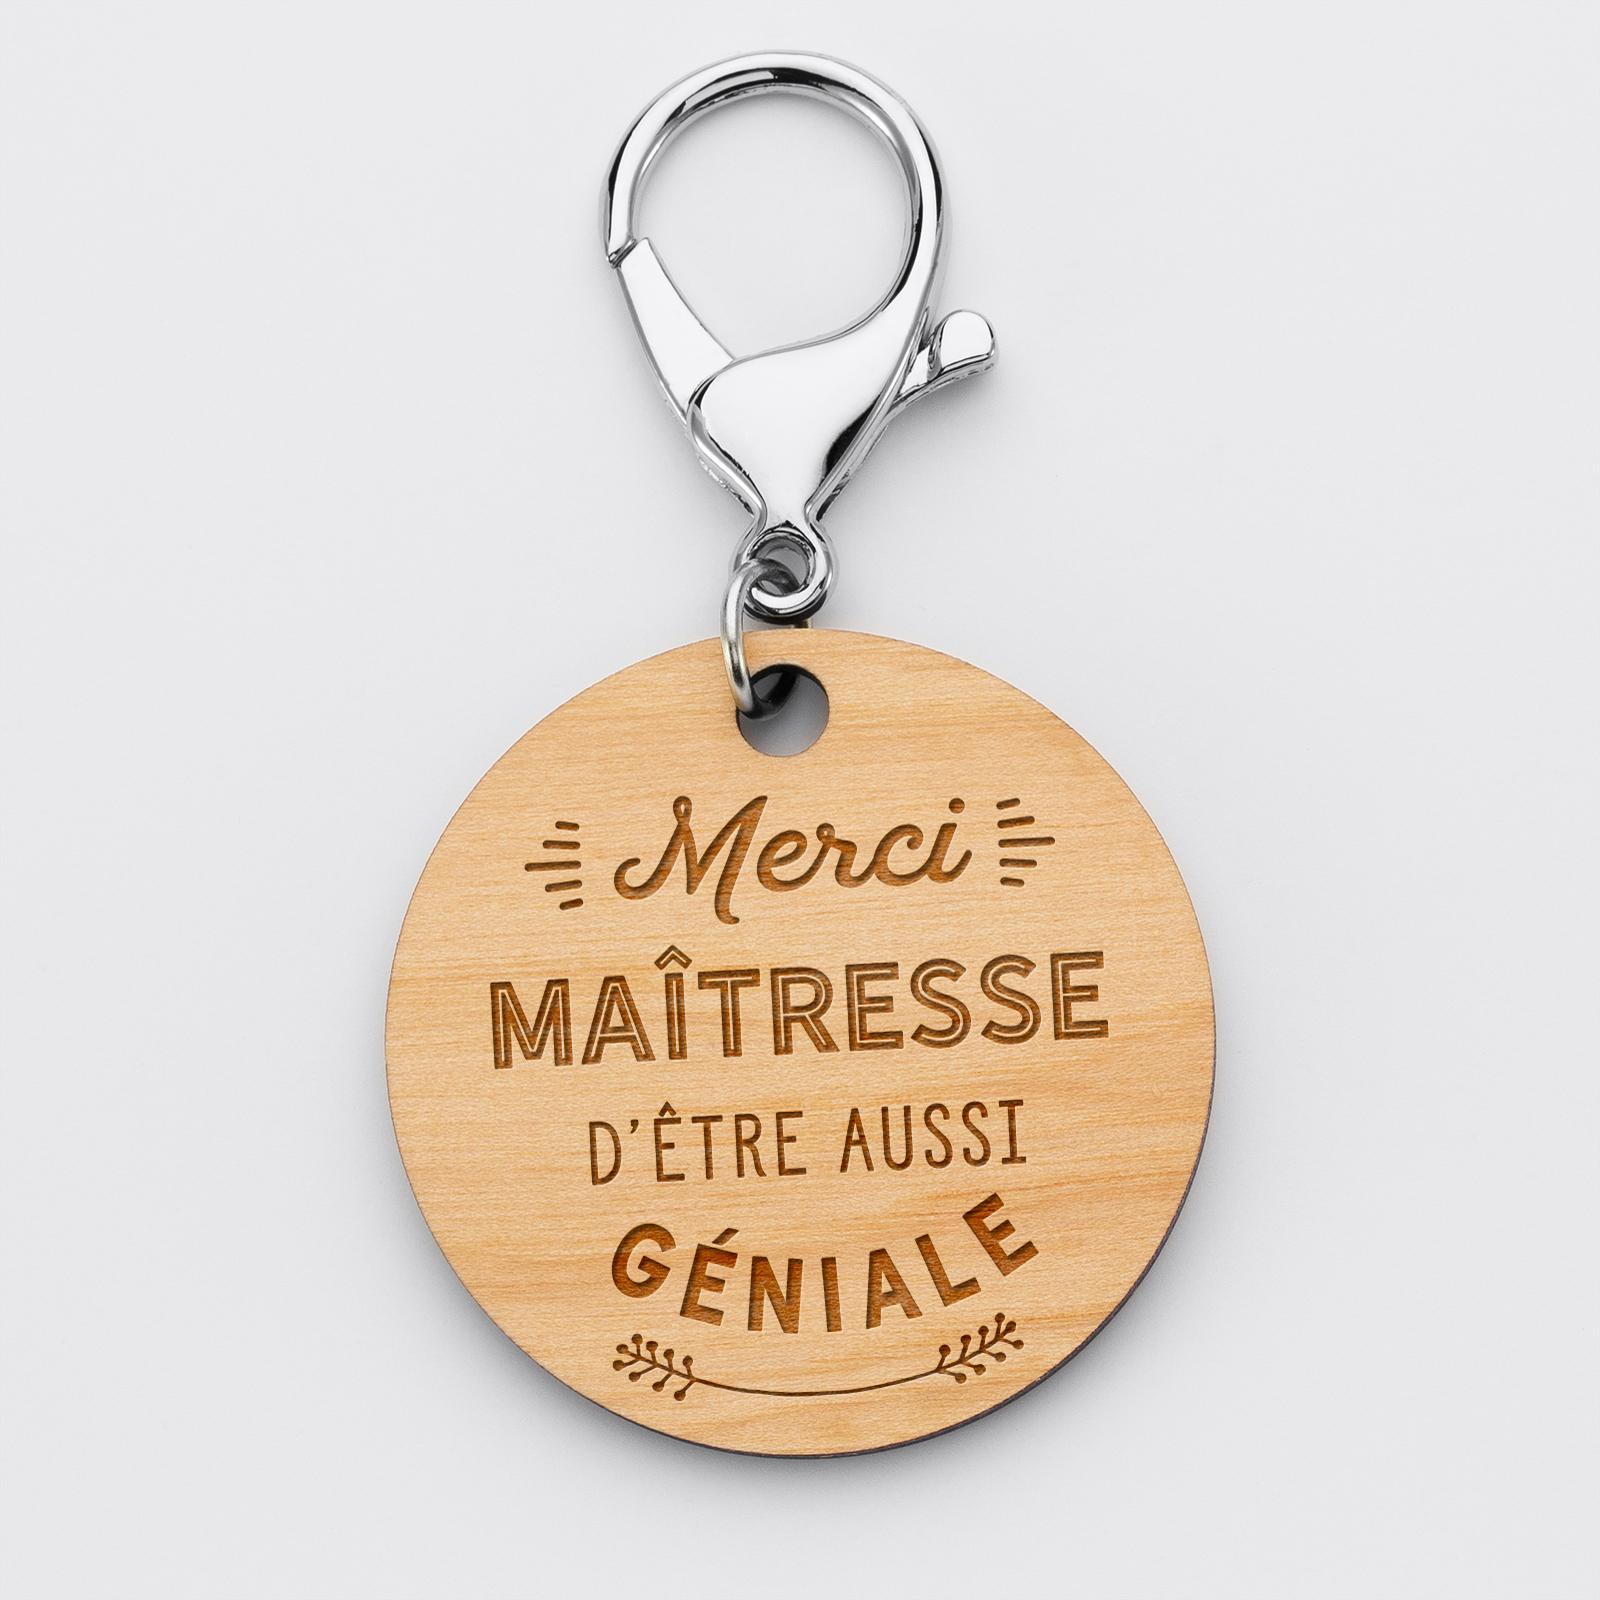 Porte-clés gravé bois médaille ronde 50 mm - Edition spéciale "Merci Maîtresse"